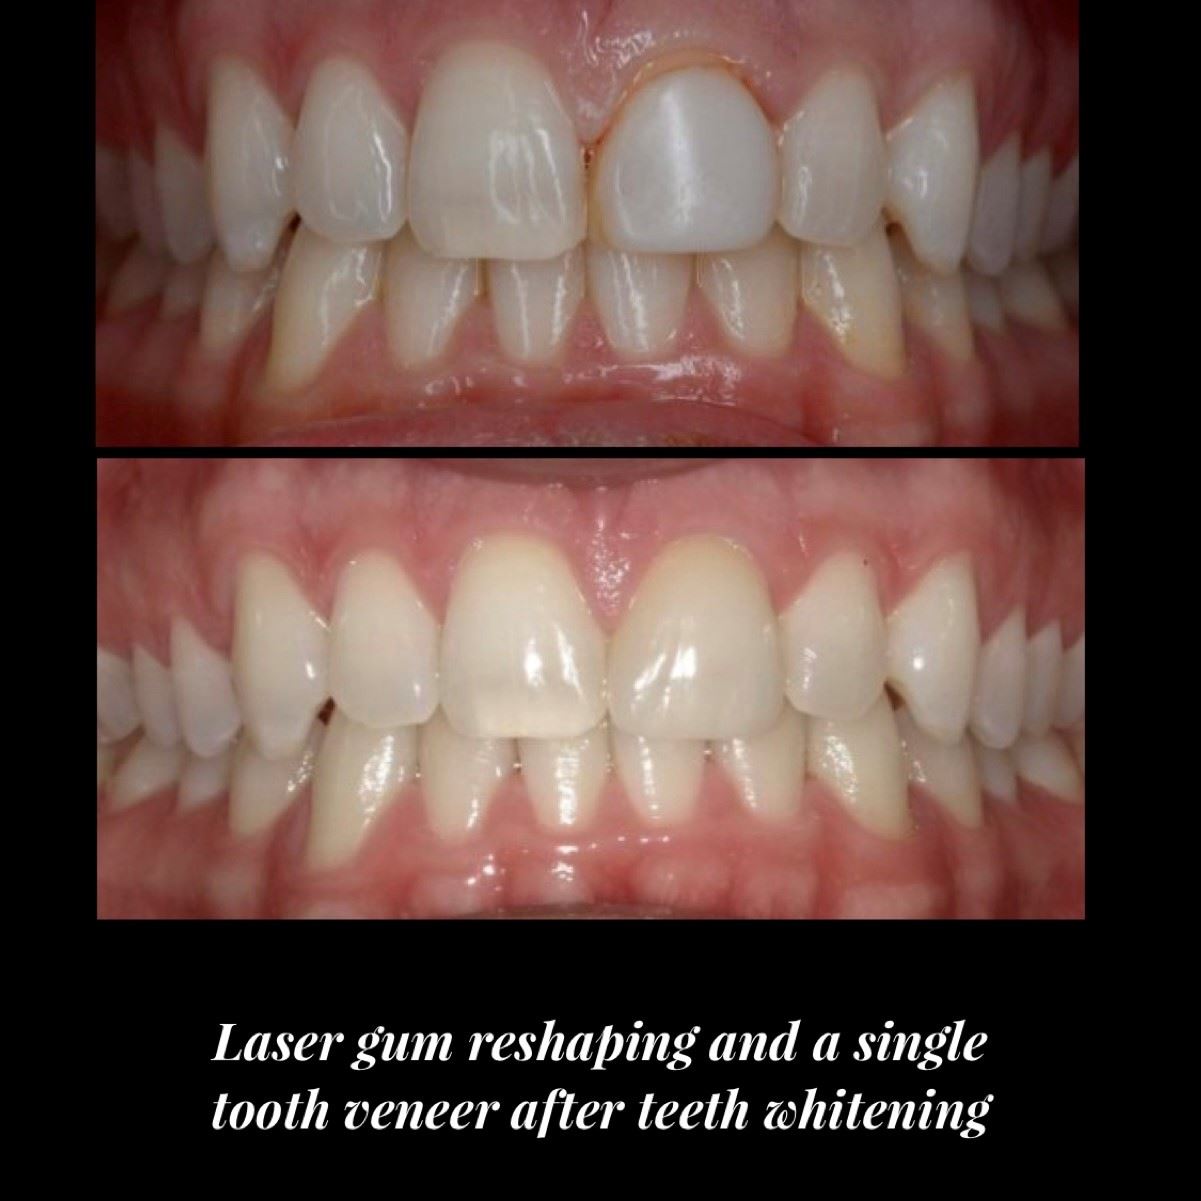 Laser Gum Reshaping, Single Tooth Veneer & Teeth Whitening